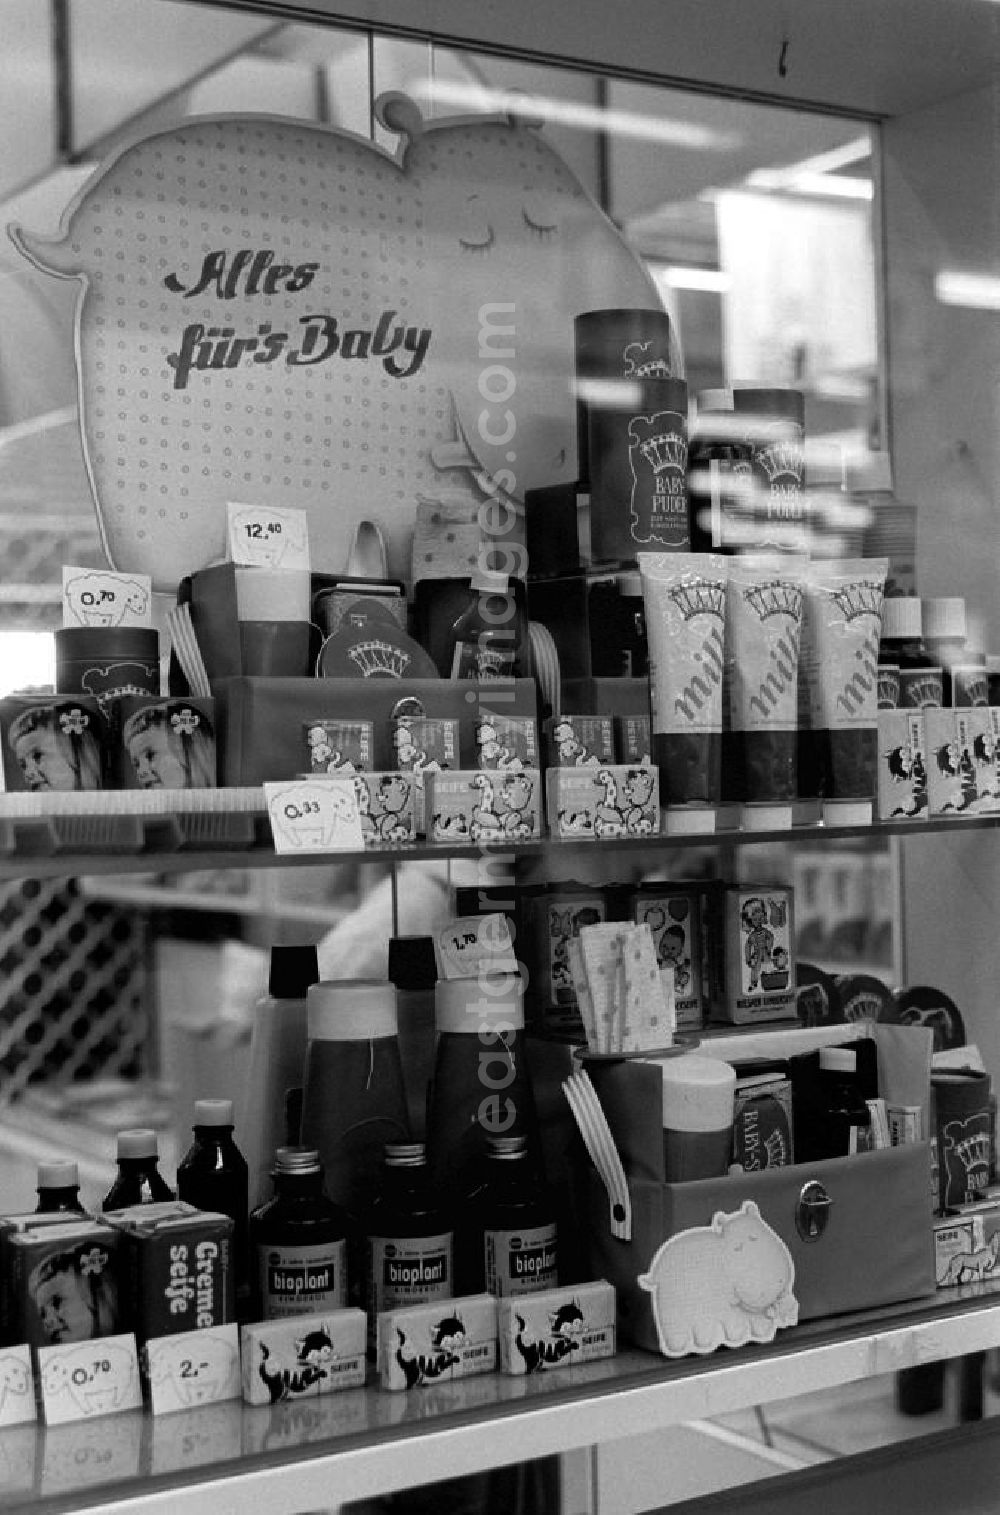 GDR image archive: Berlin - Vitrine mit verschiedenen Kosmetikprodukten für das Baby, wie Puder, Seife, Creme und Badzusätze im Centrum-Warenhaus am Alexandeplatz.